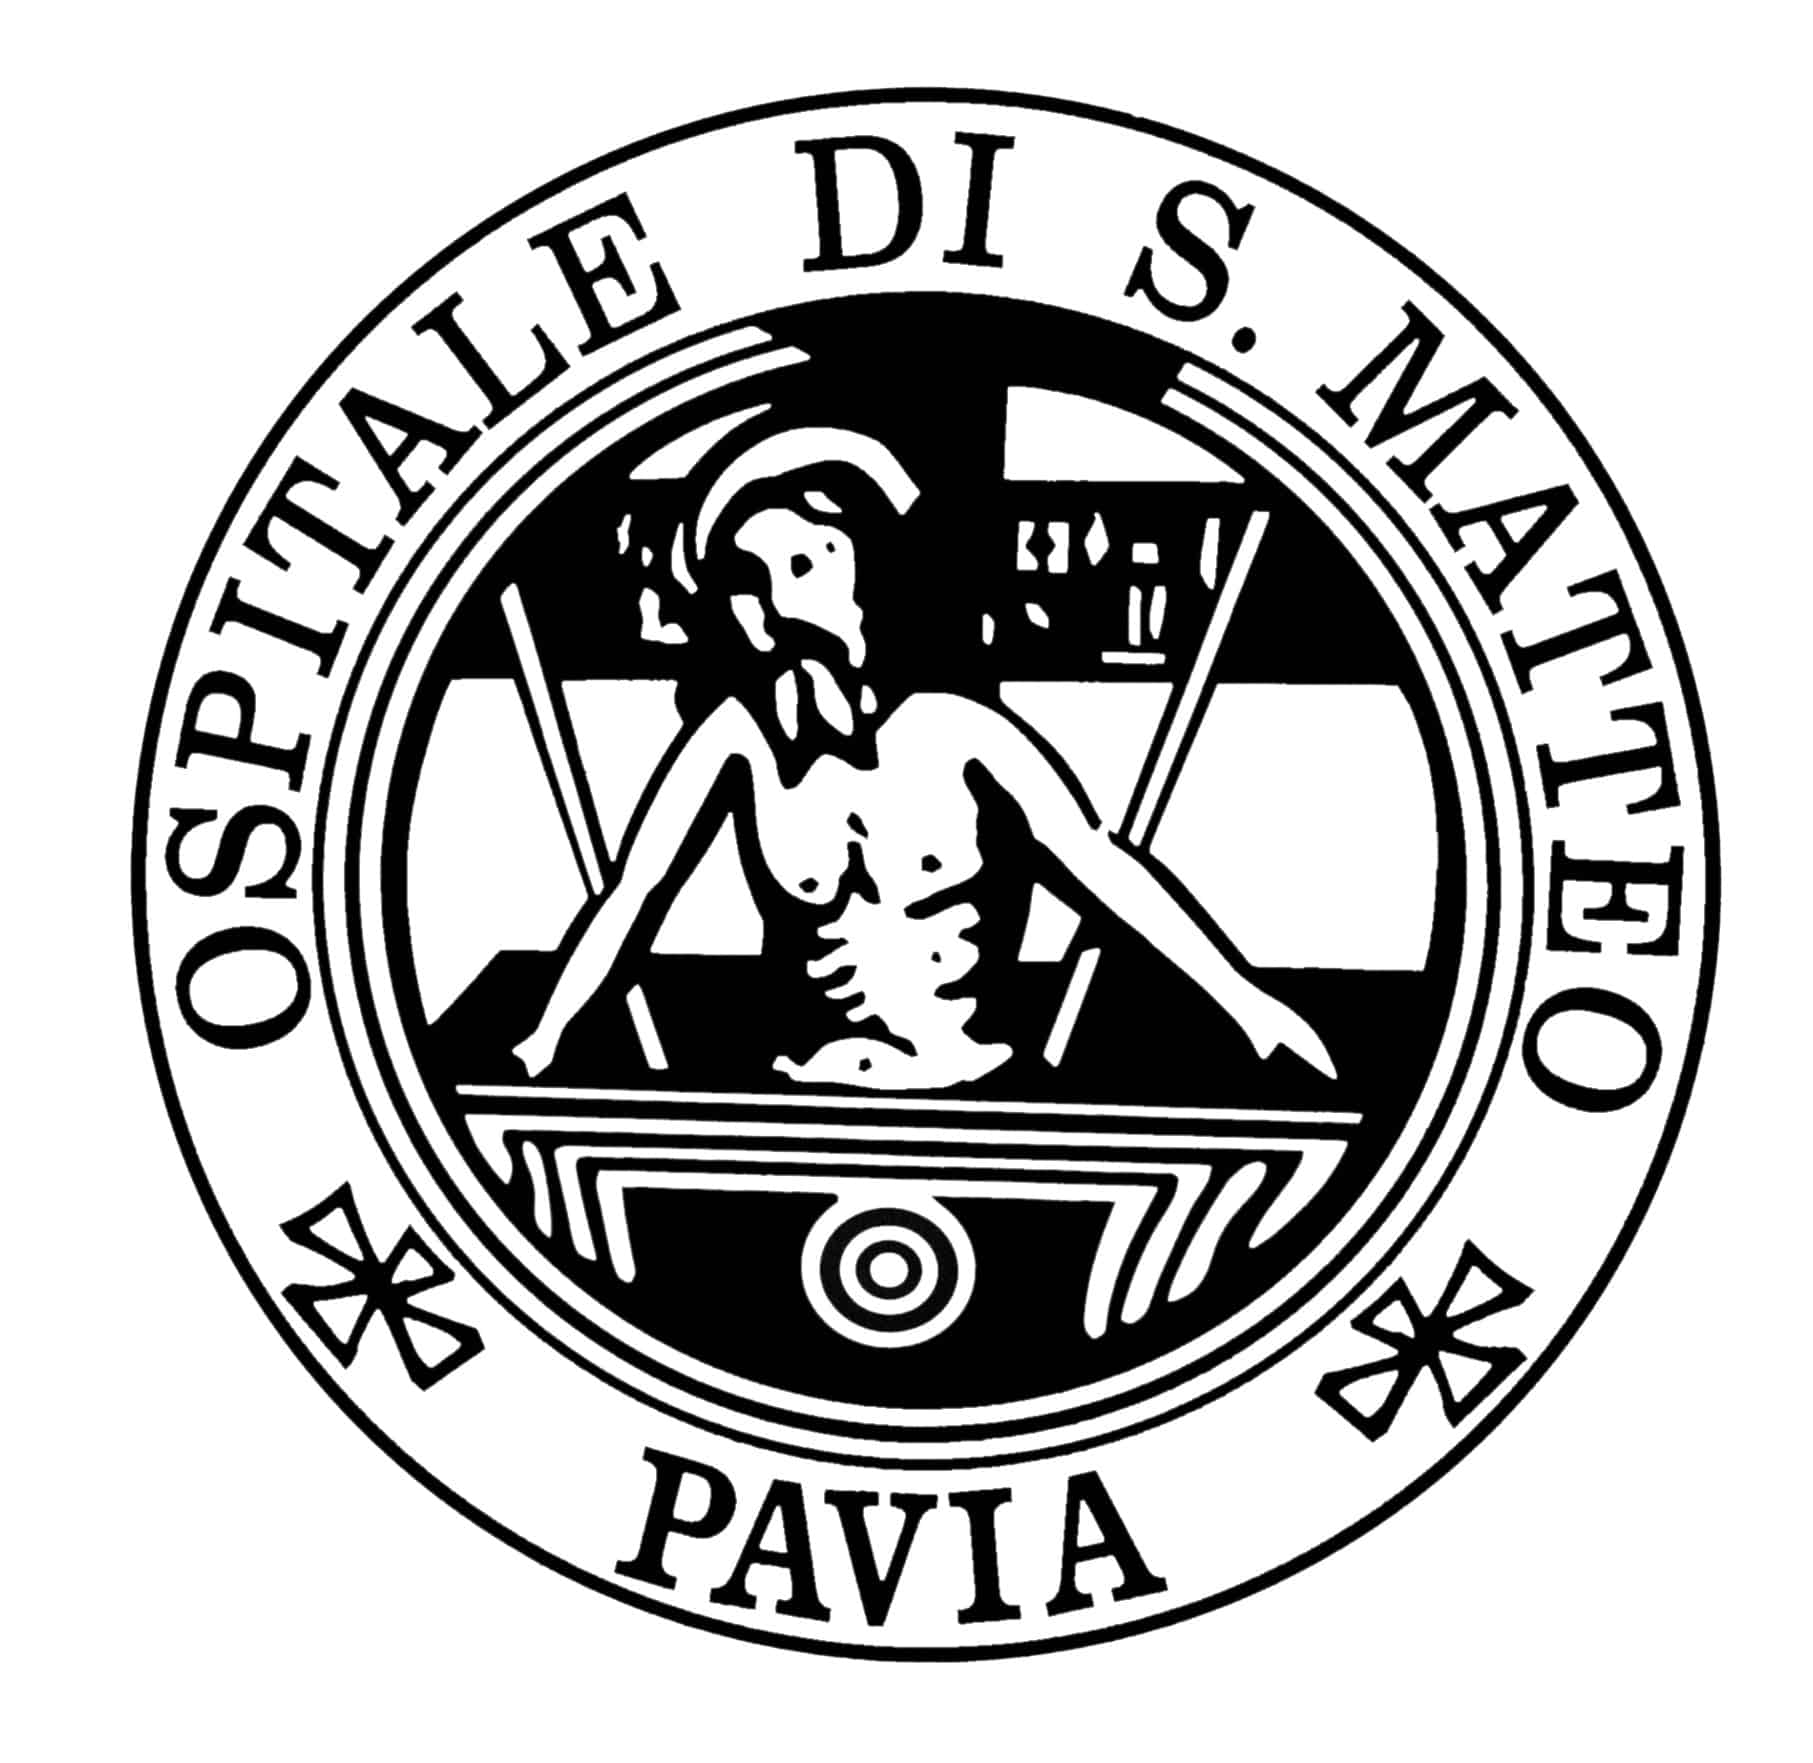 San Matteo Pavia logo.